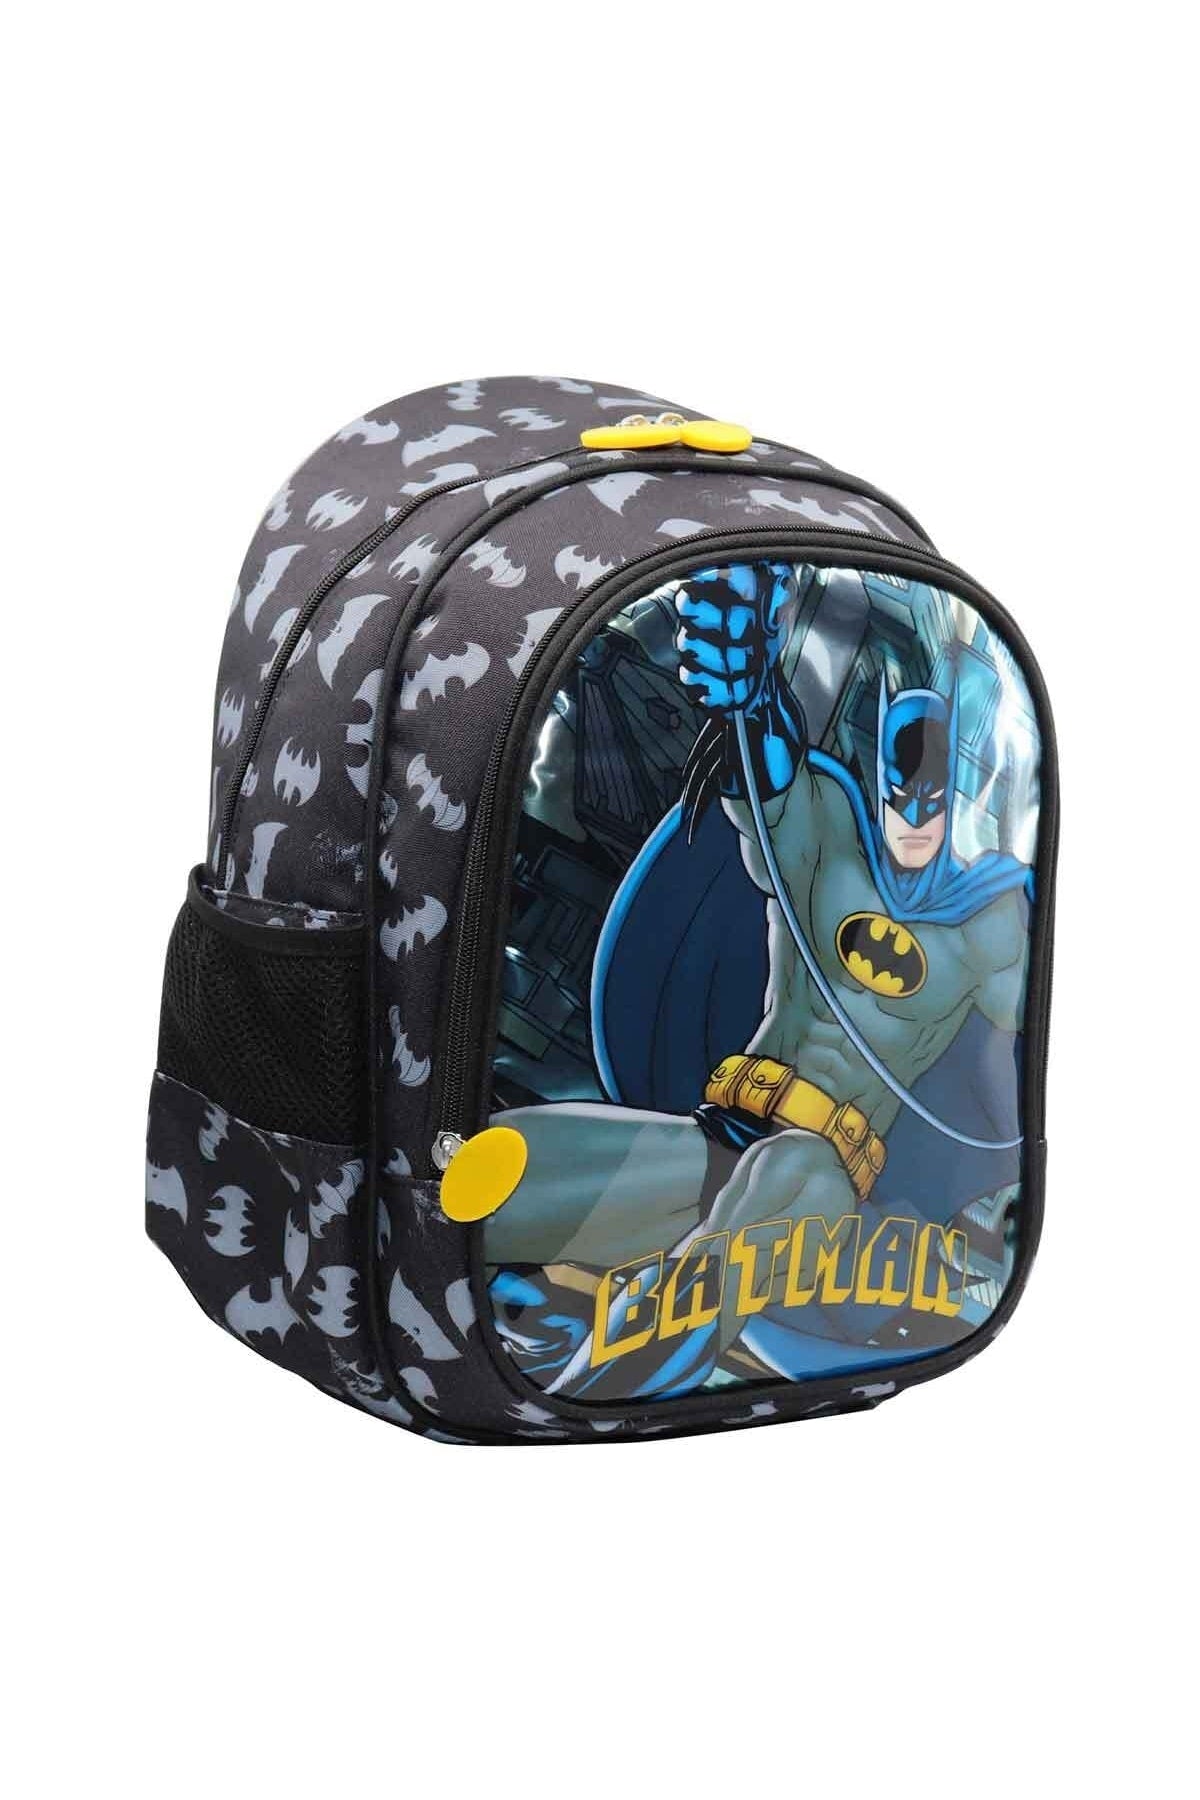 Batman School Backpack And Pencil Bag Set